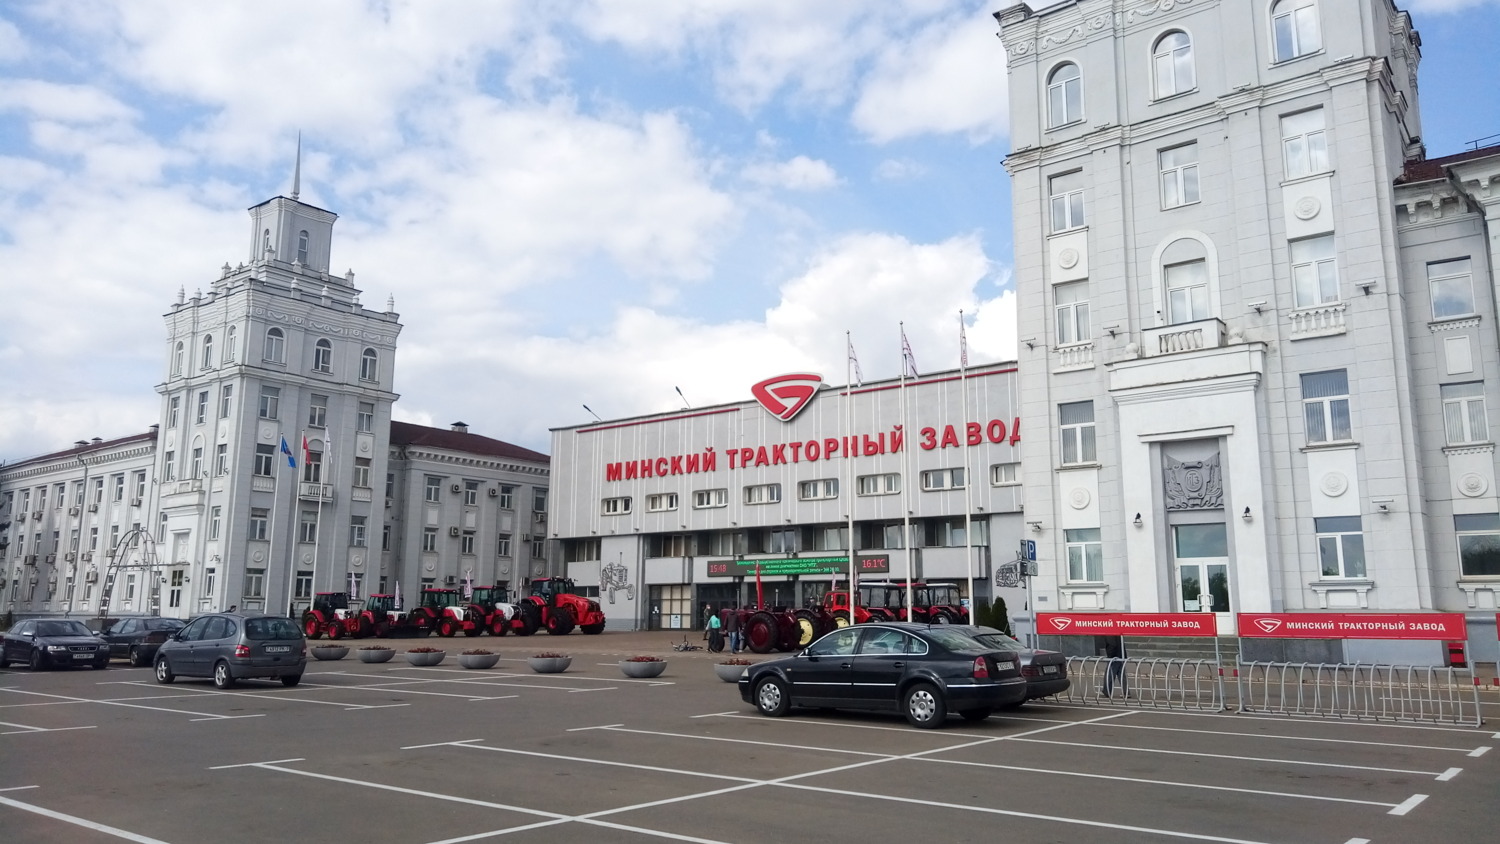 Топливная карта вместо самосвалов. Топ-10 крупнейших белорусских бизнесов в России